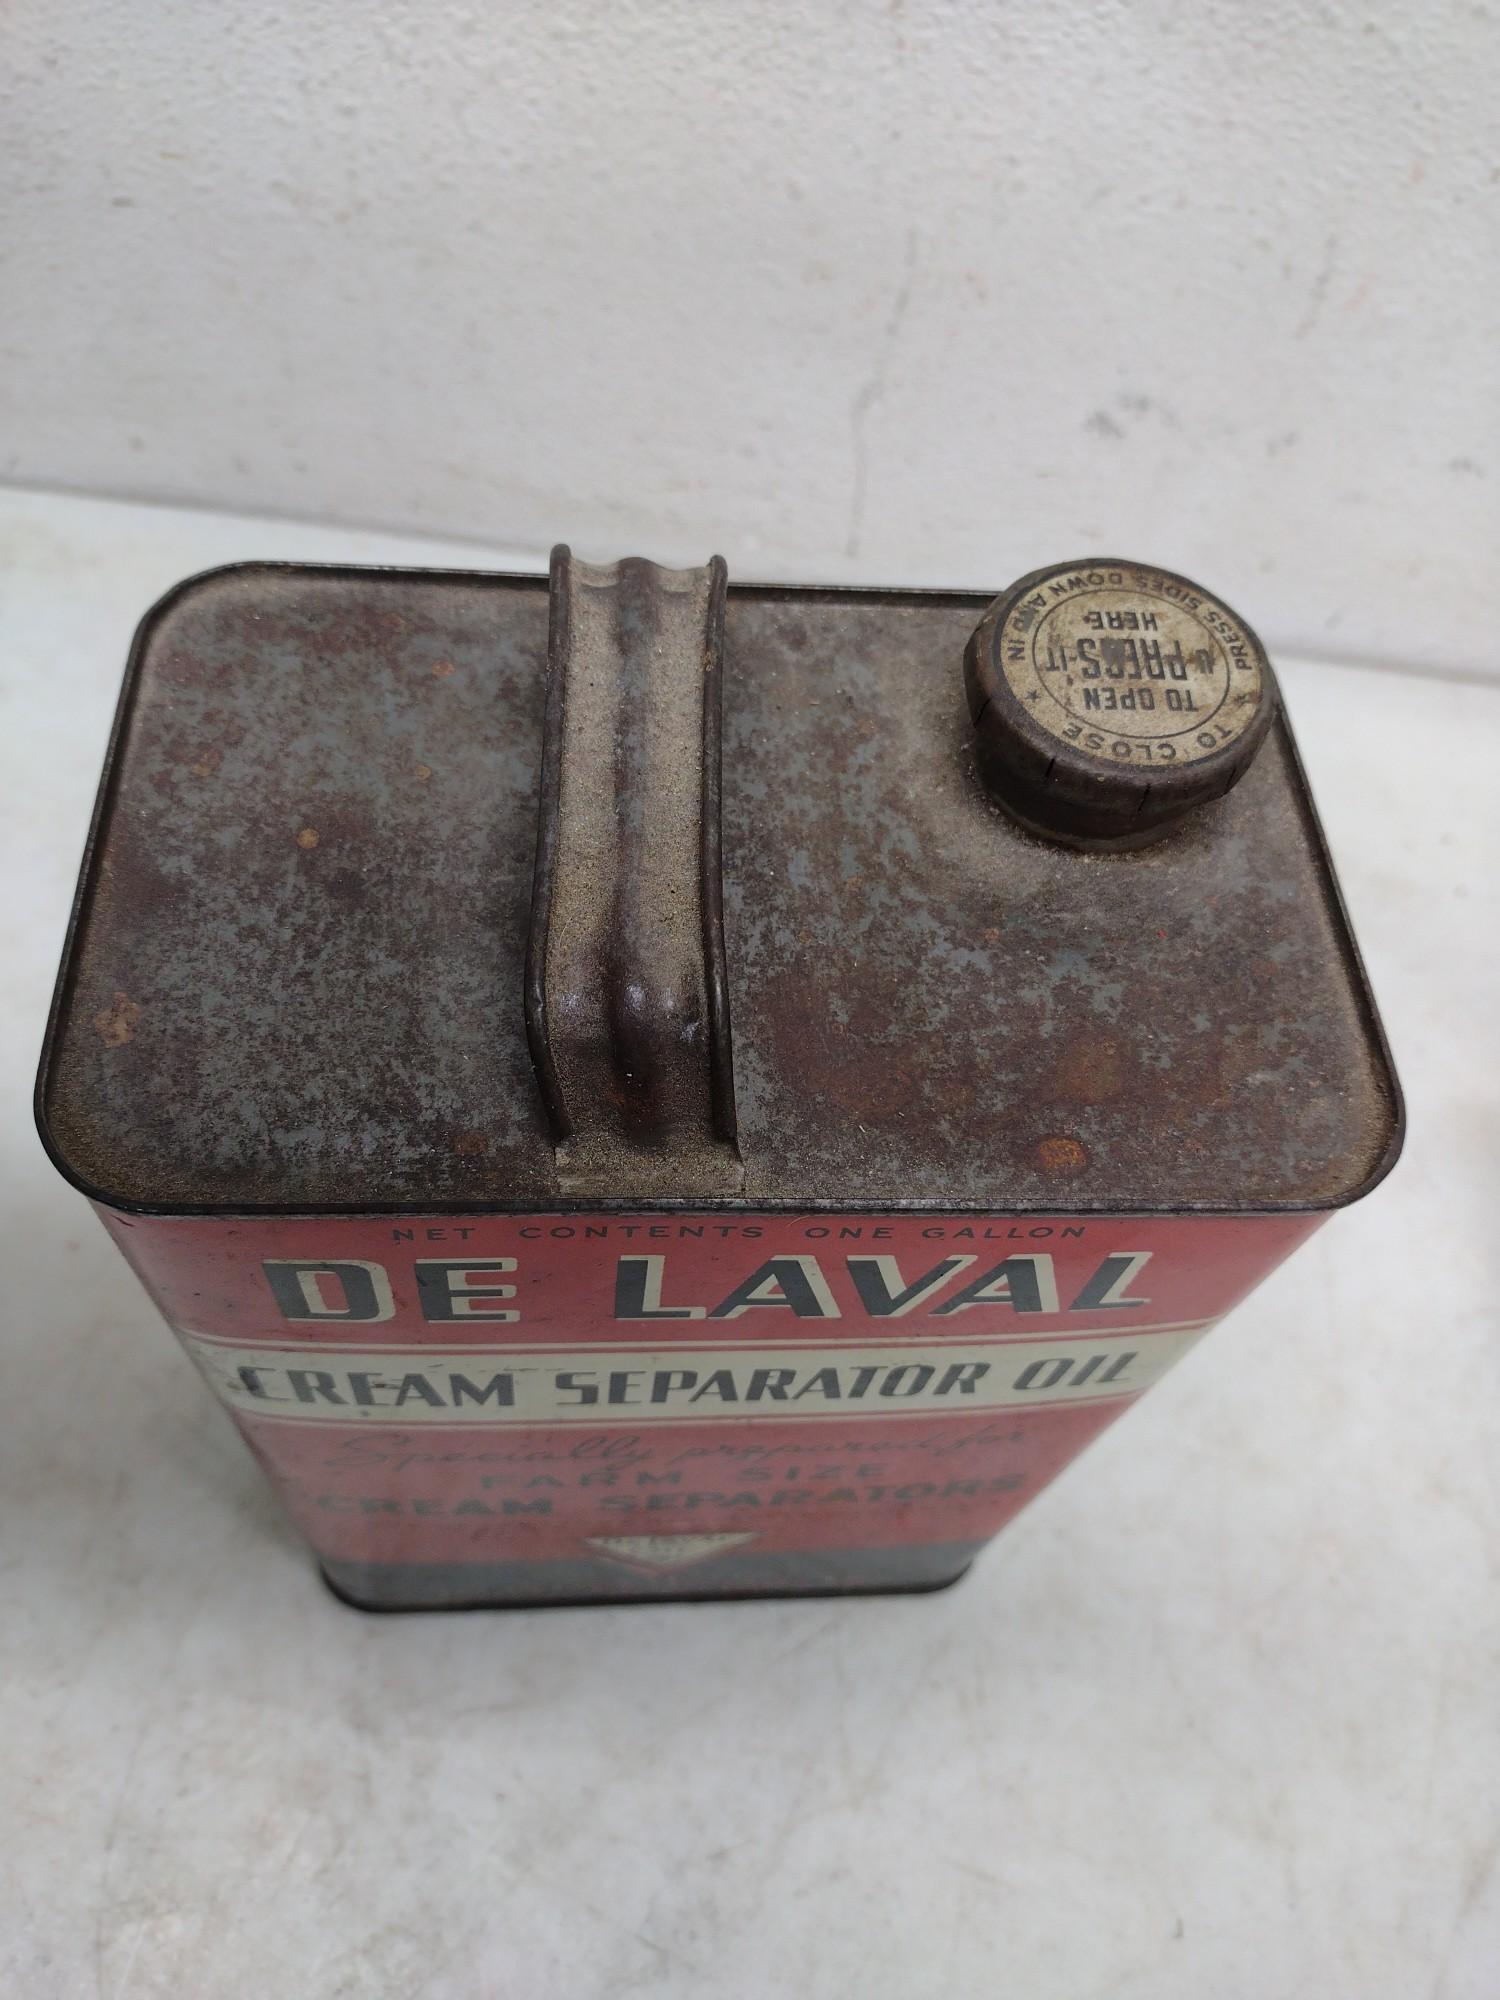 De Laval Cream Separator Oil Cans